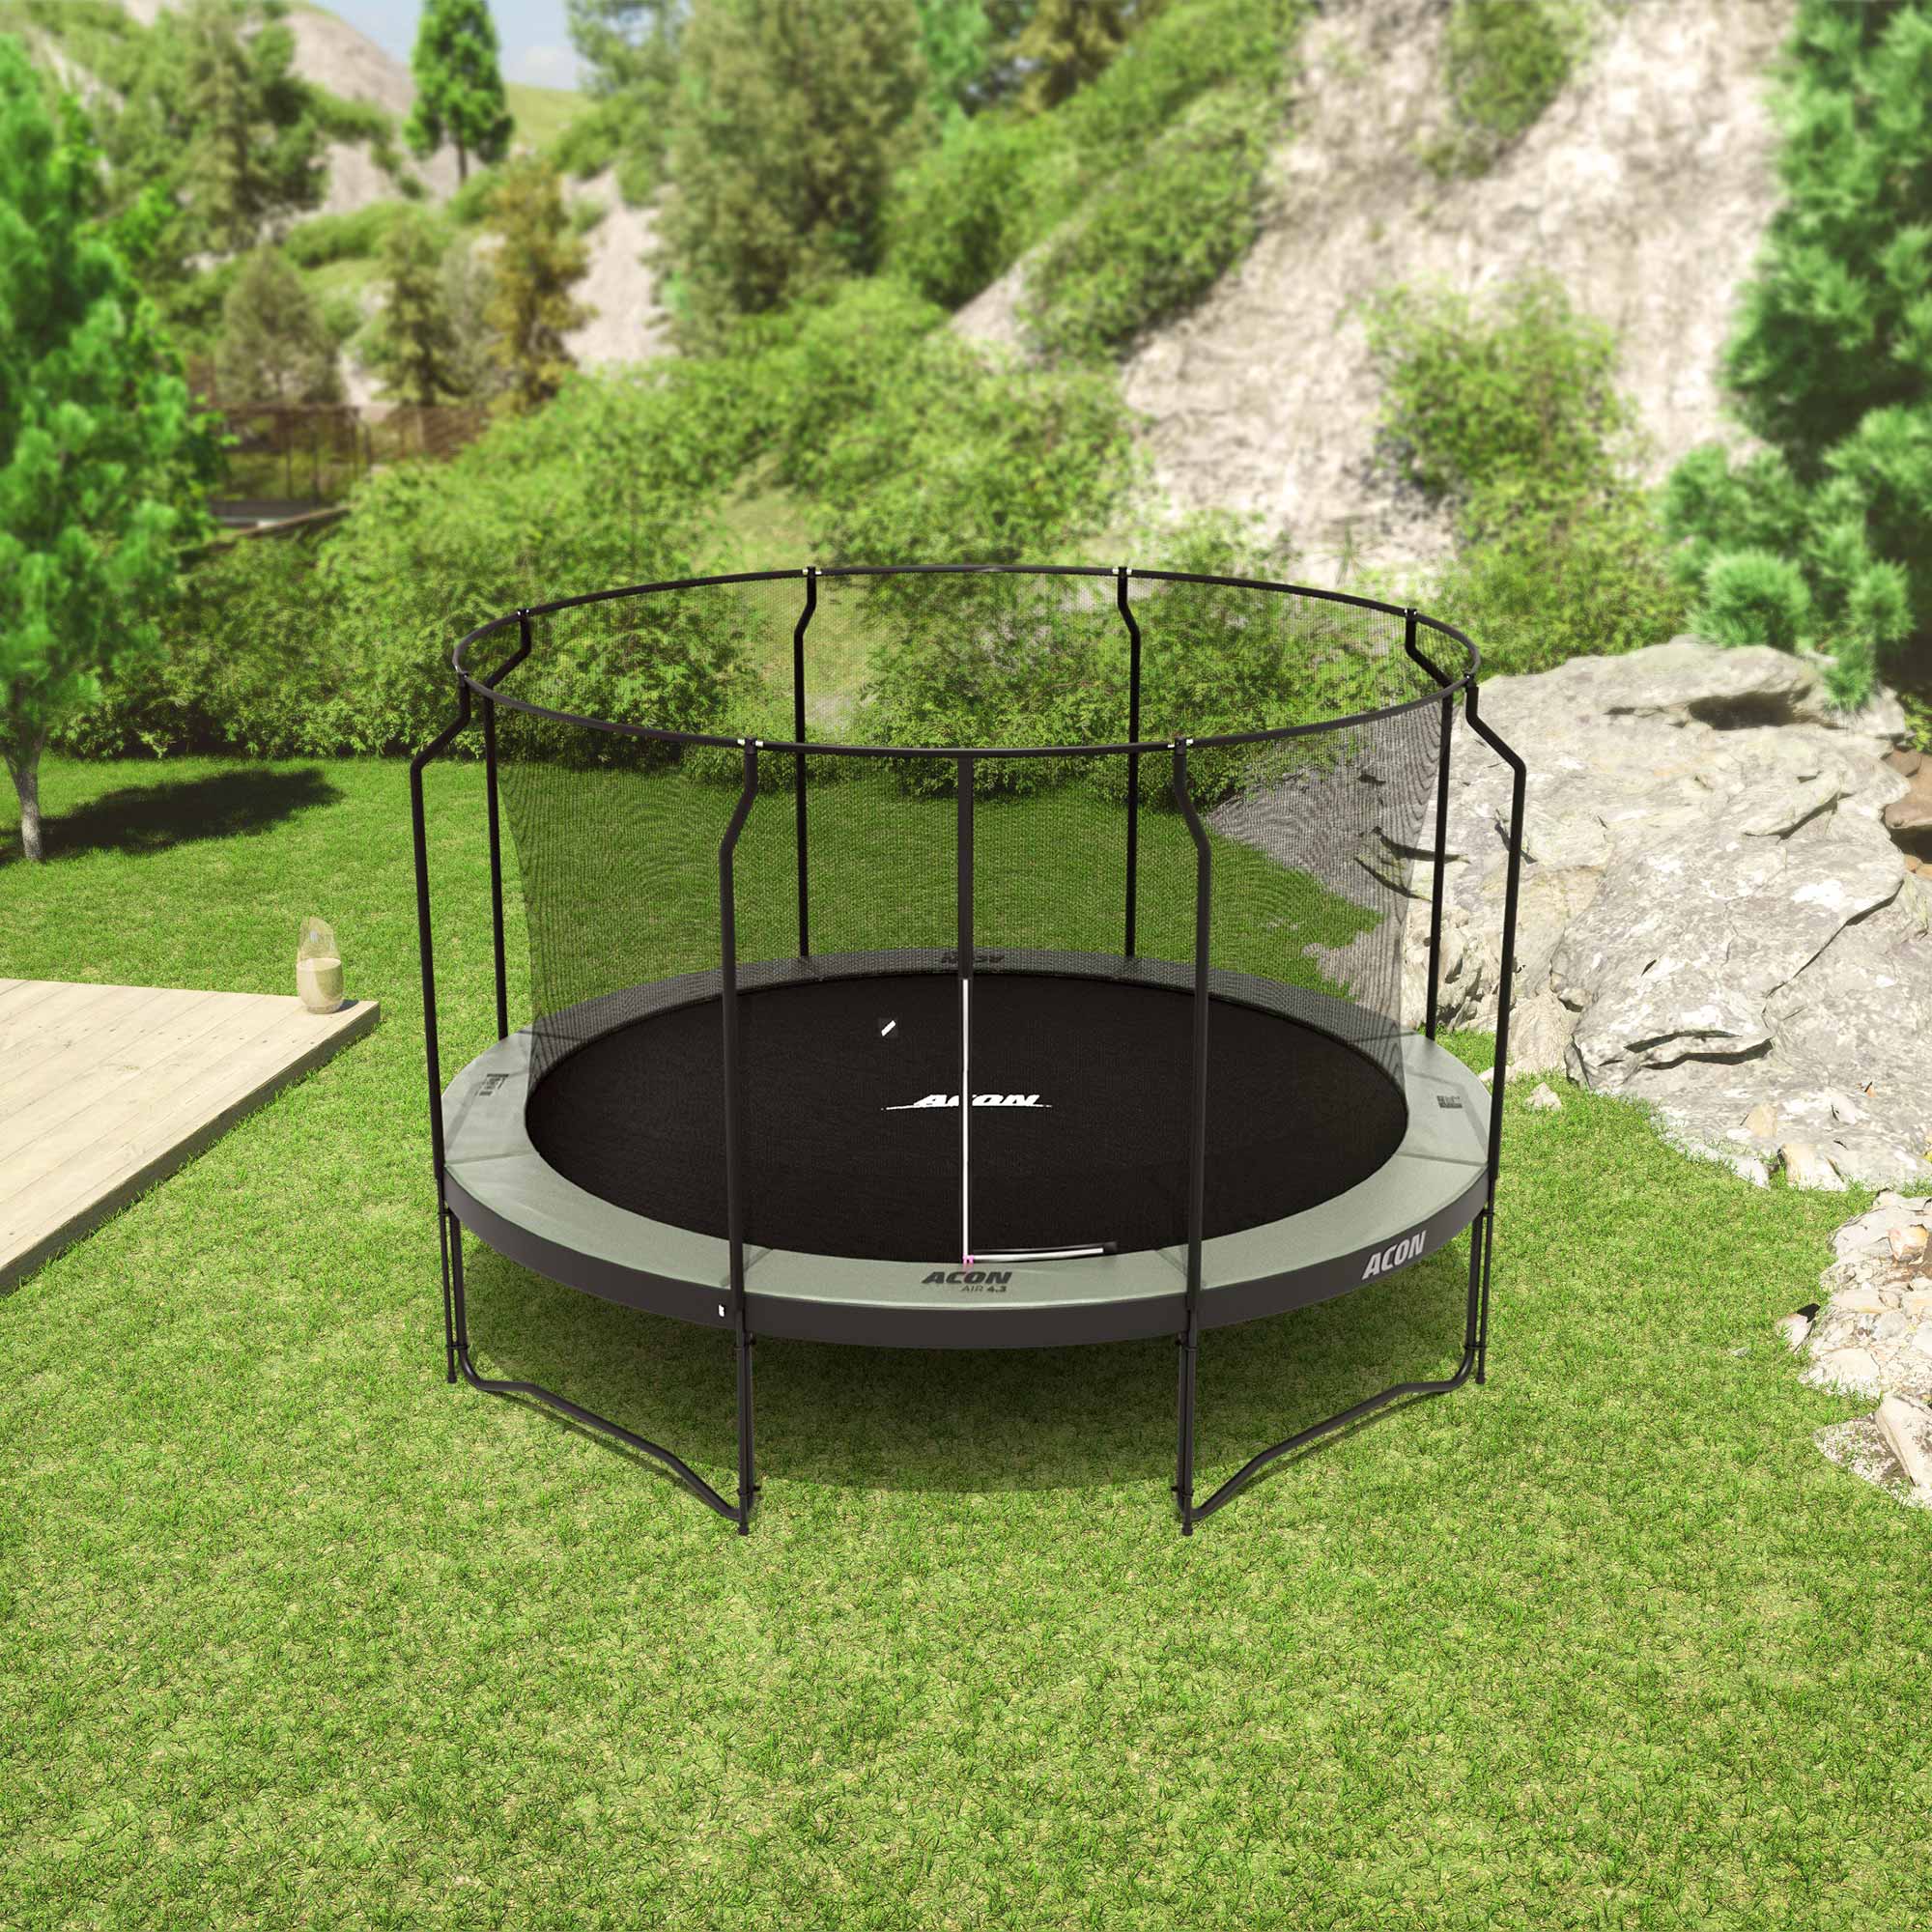 Round Acon trampoline with Premium Enclosure.